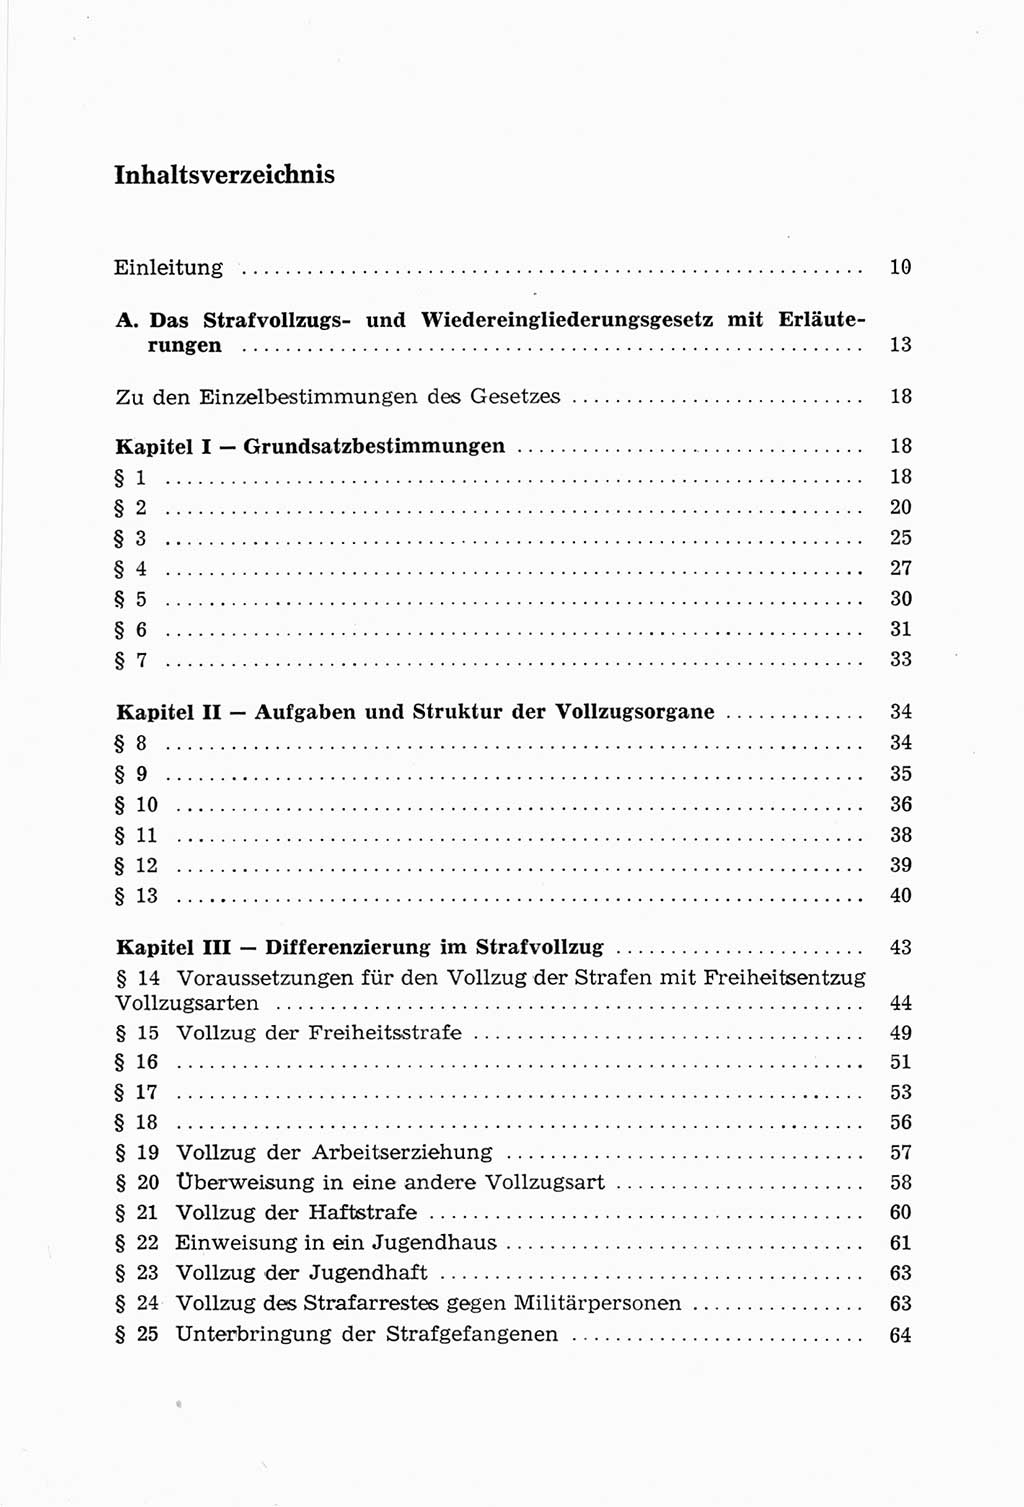 Strafvollzugs- und Wiedereingliederungsgesetz (SVWG) der Deutschen Demokratischen Republik (DDR) 1968, Seite 5 (SVWG DDR 1968, S. 5)